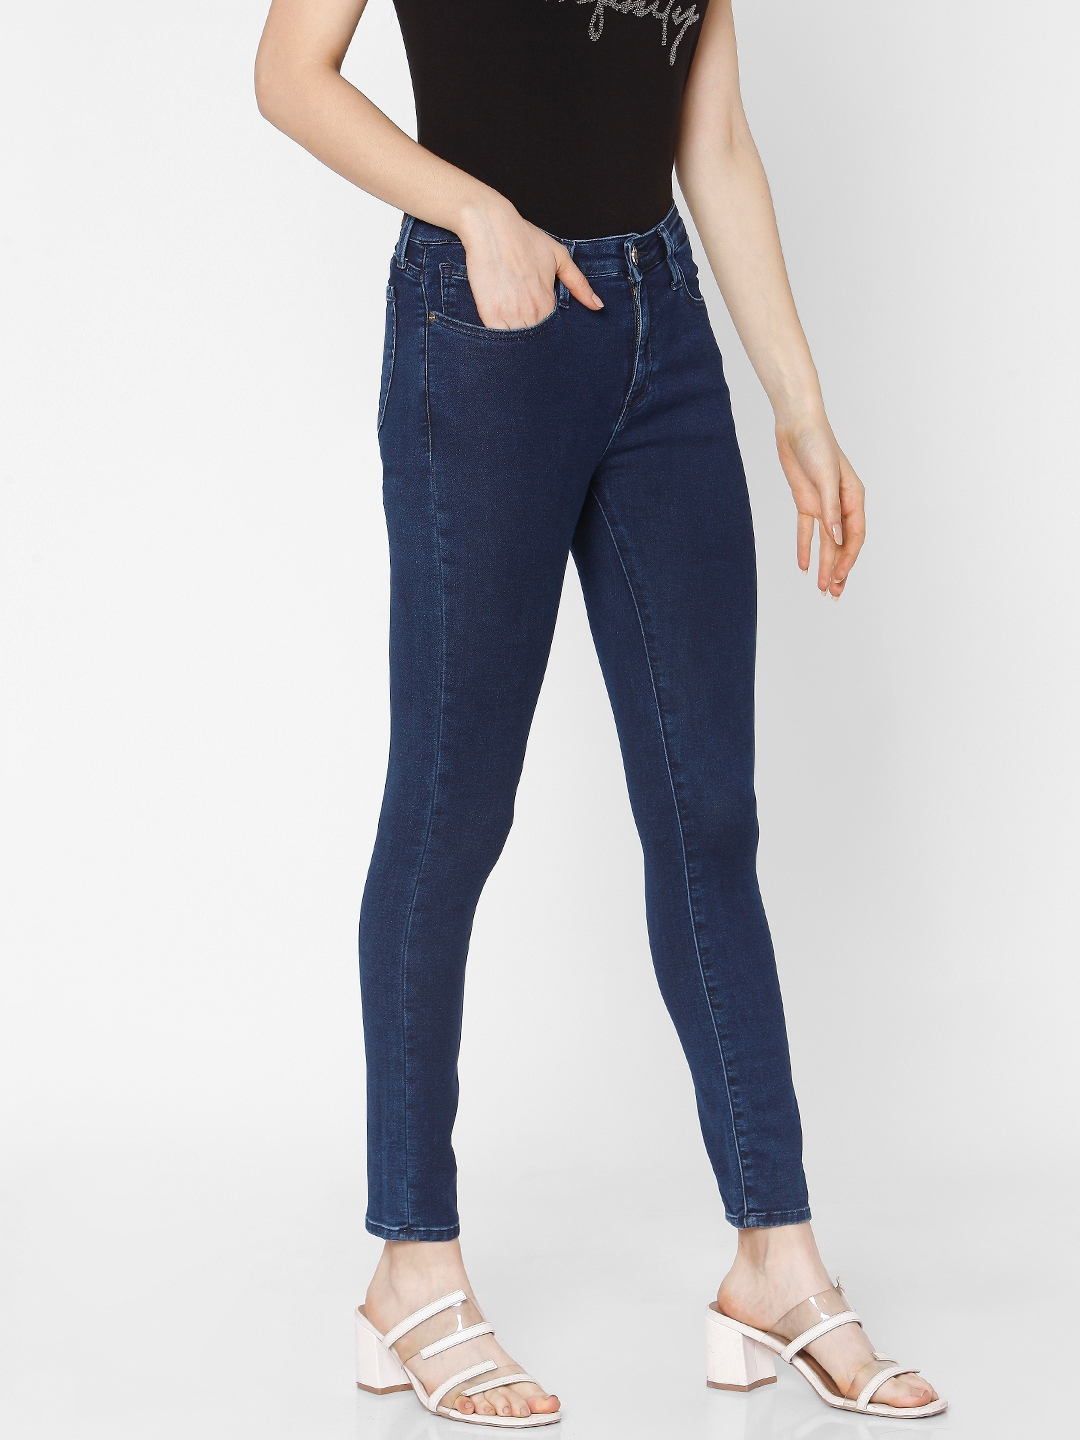 spykar | Women's Blue Cotton Solid Skinny Jeans 3